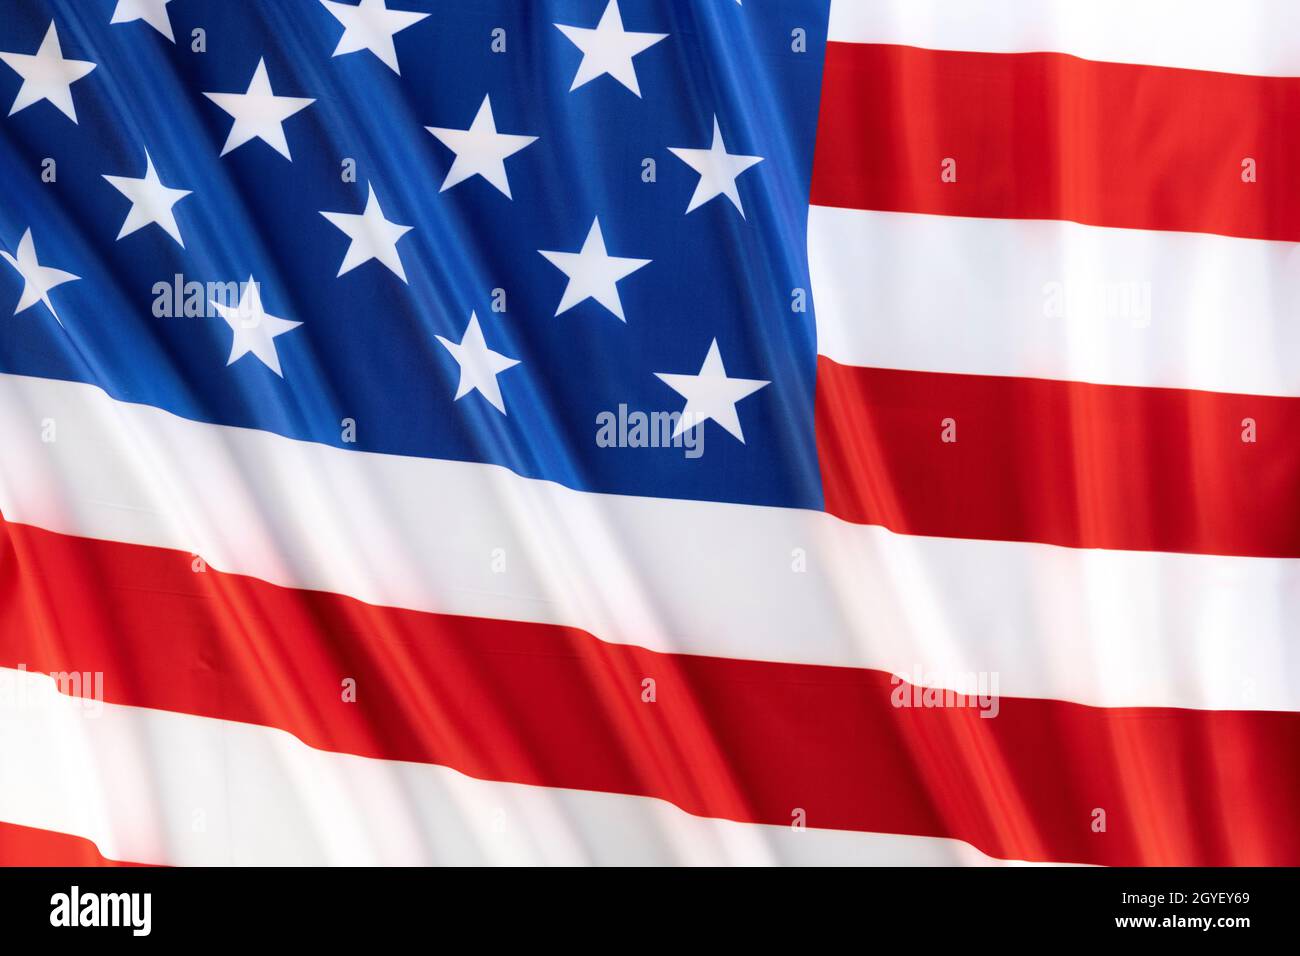 Old Glory, die amerikanische Nationalflagge, ein Symbol der Freiheit und des Wohlstands mit seinen leuchtenden Farben Rot, Weiß und Blau. Stockfoto